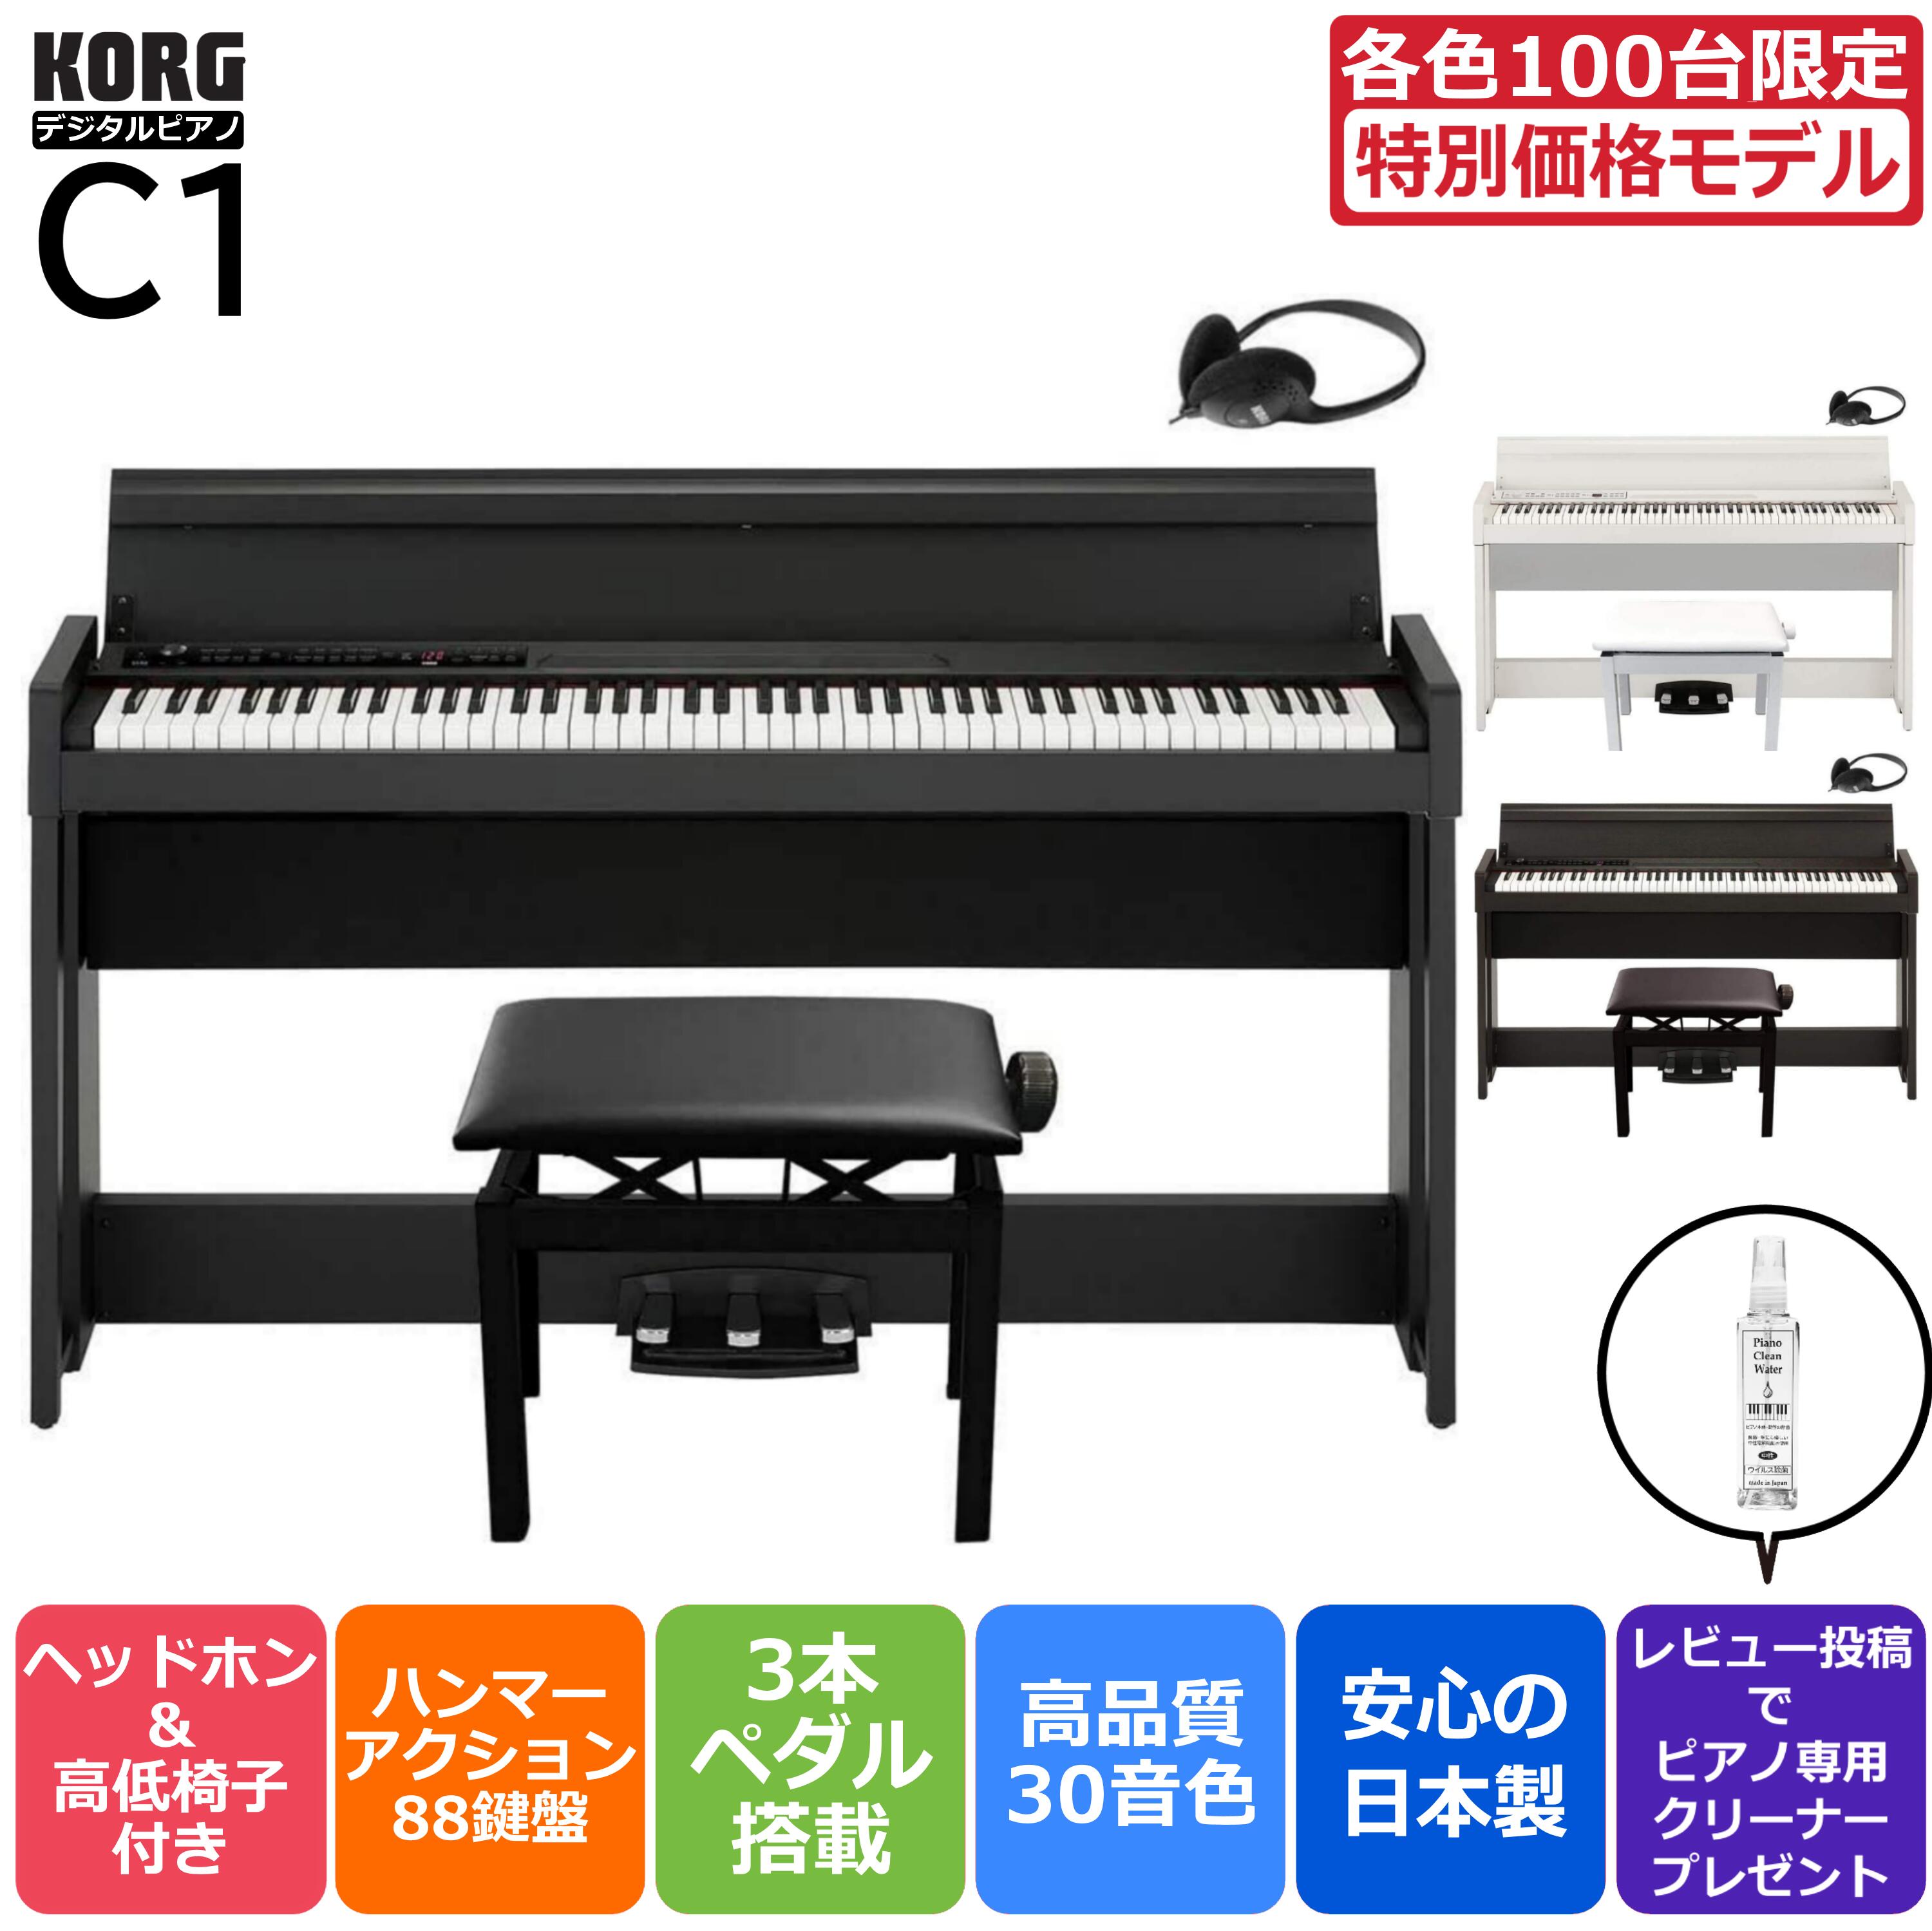 ピアノ・キーボード, 電子ピアノ 13PC-300 KORG 88 3 C1